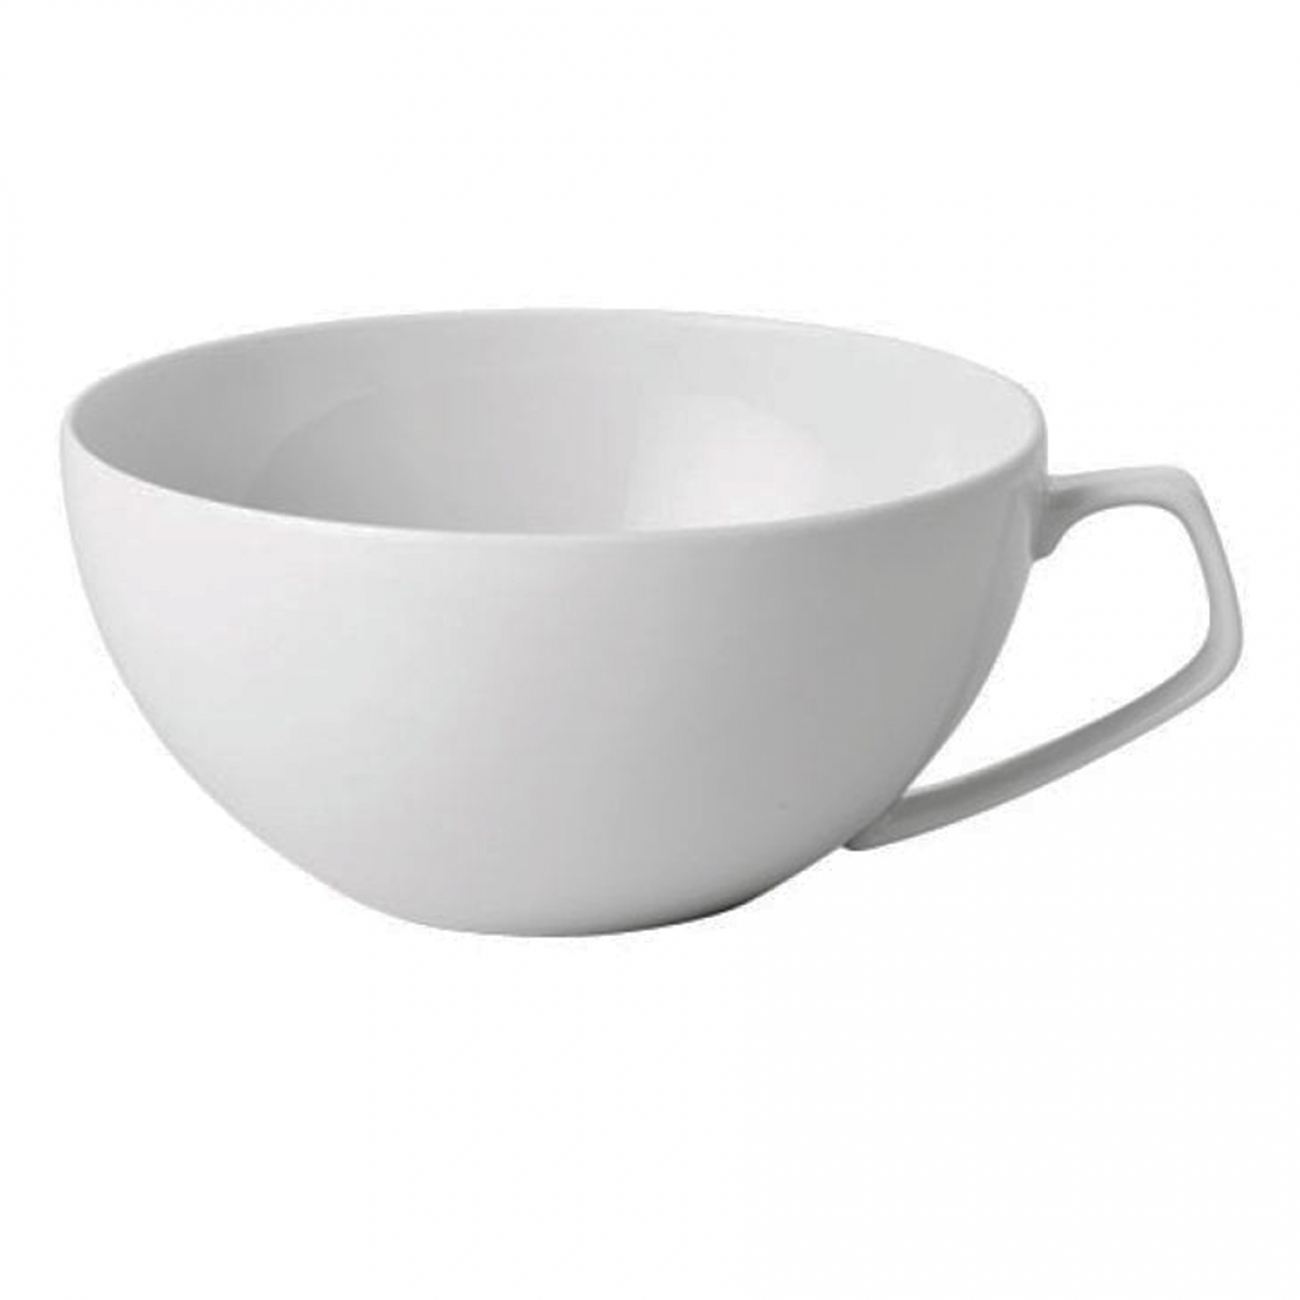 Rosenthal TAC Weiss Tea Cup